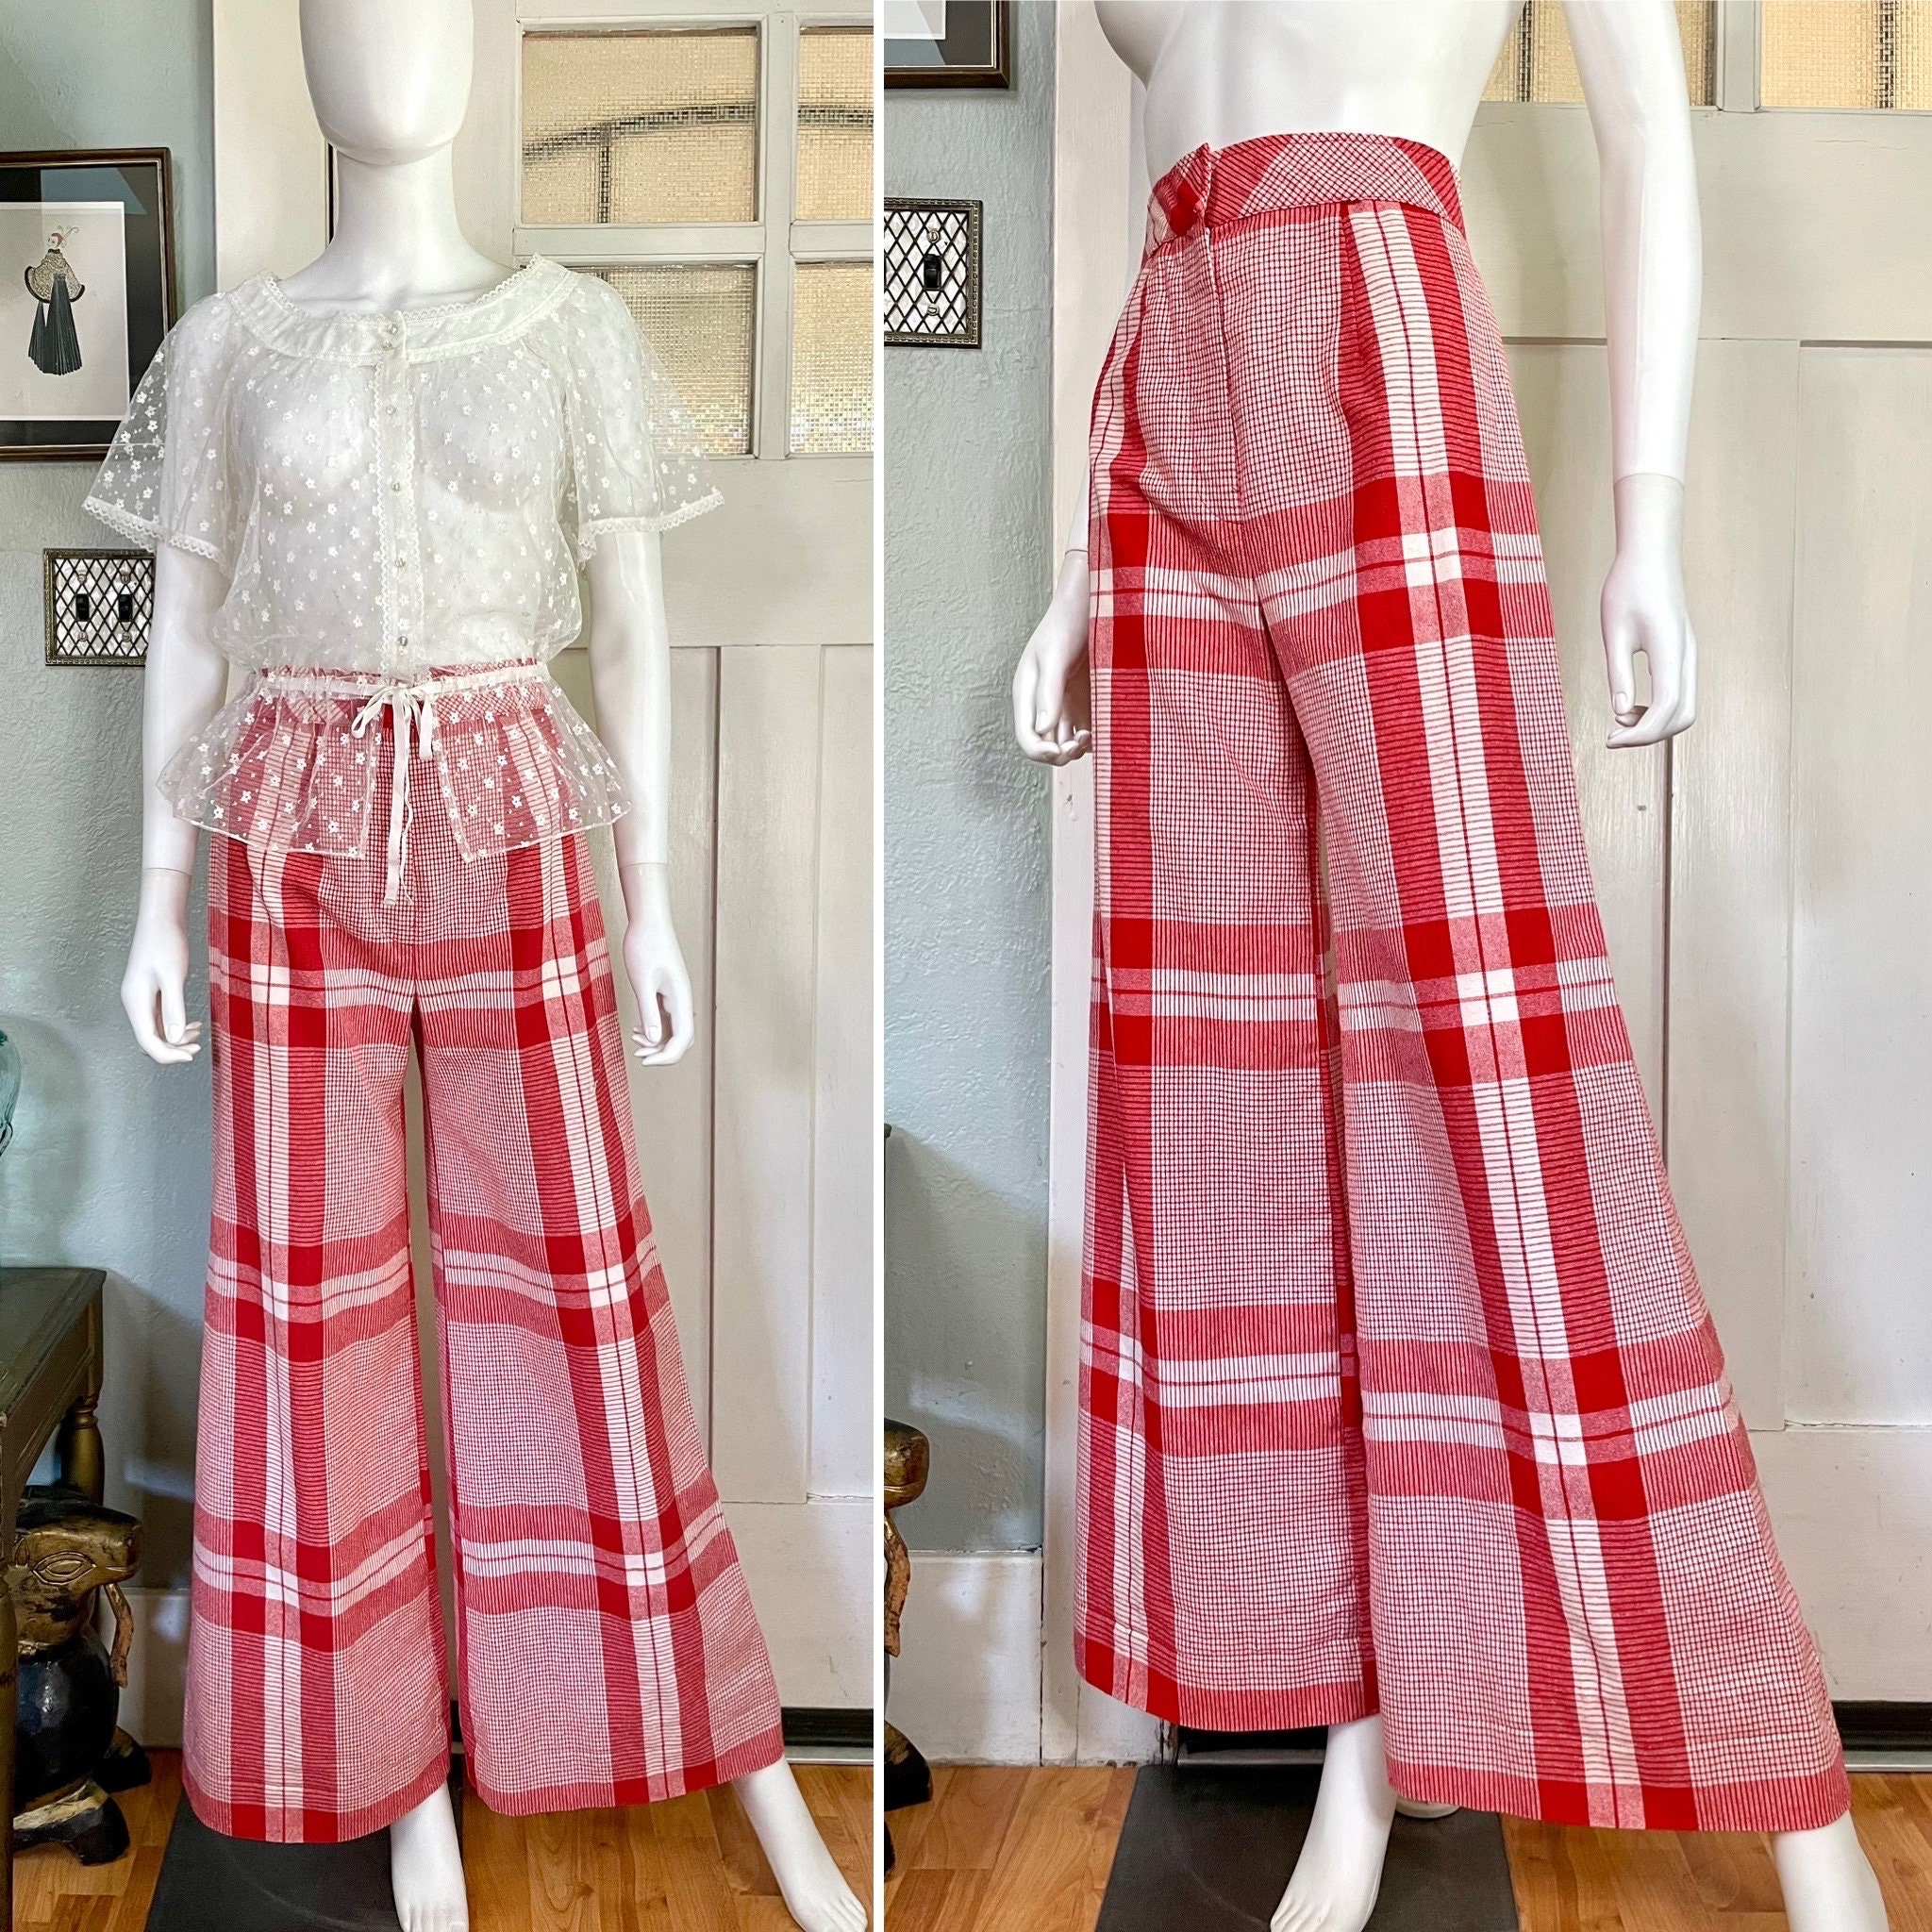 Classic Vintage 1970s High Waist Bobbie Brooks Red Wool Plaid | Etsy |  Fashion, 60s and 70s fashion, Vintage fashion